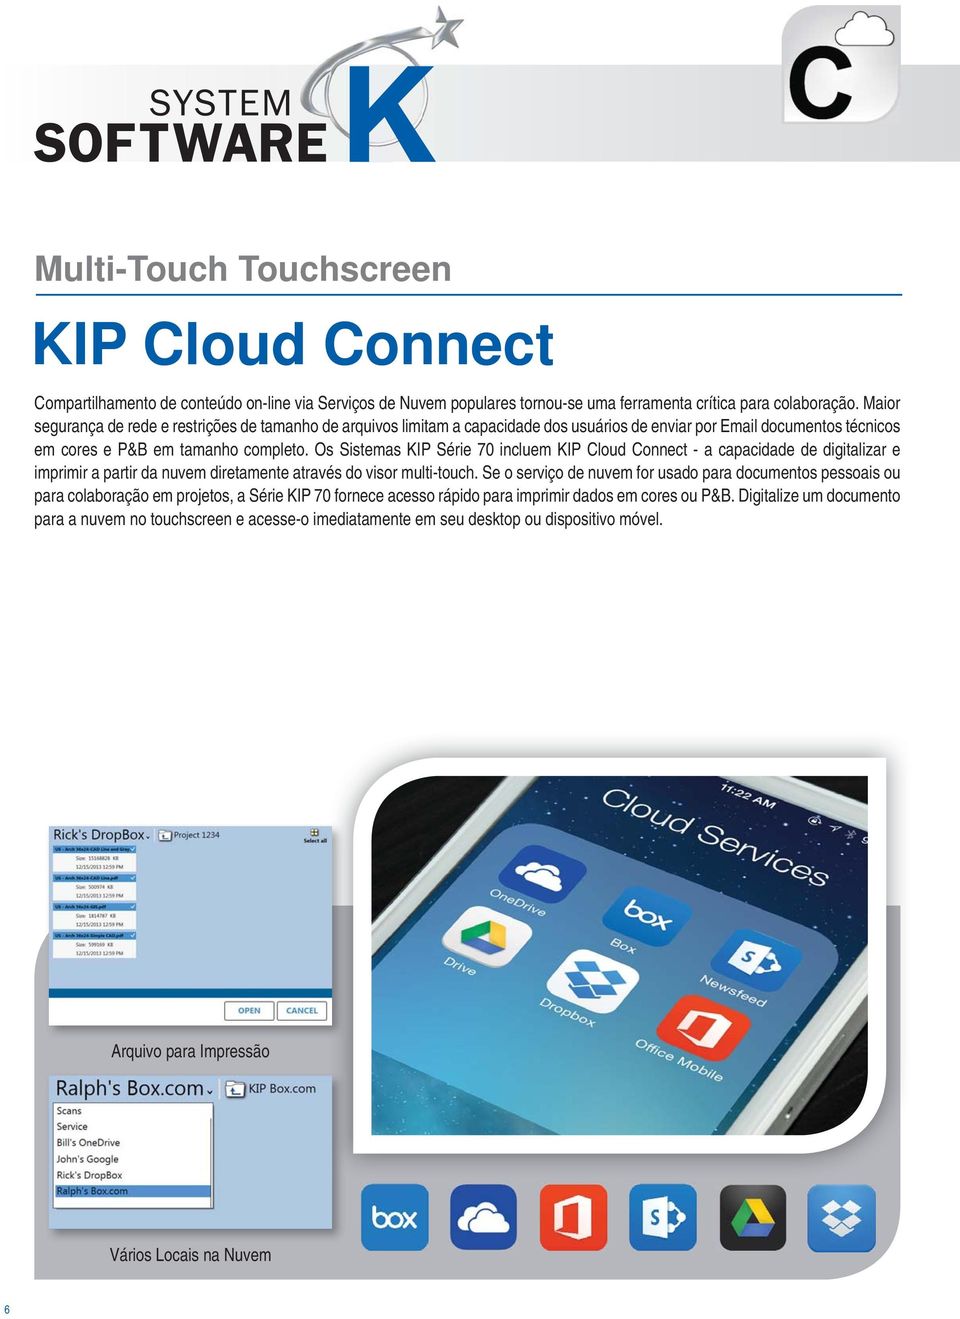 Os Sistemas KIP Série 70 incluem KIP Cloud Connect - a capacidade de digitalizar e imprimir a partir da nuvem diretamente através do visor multi-touch.